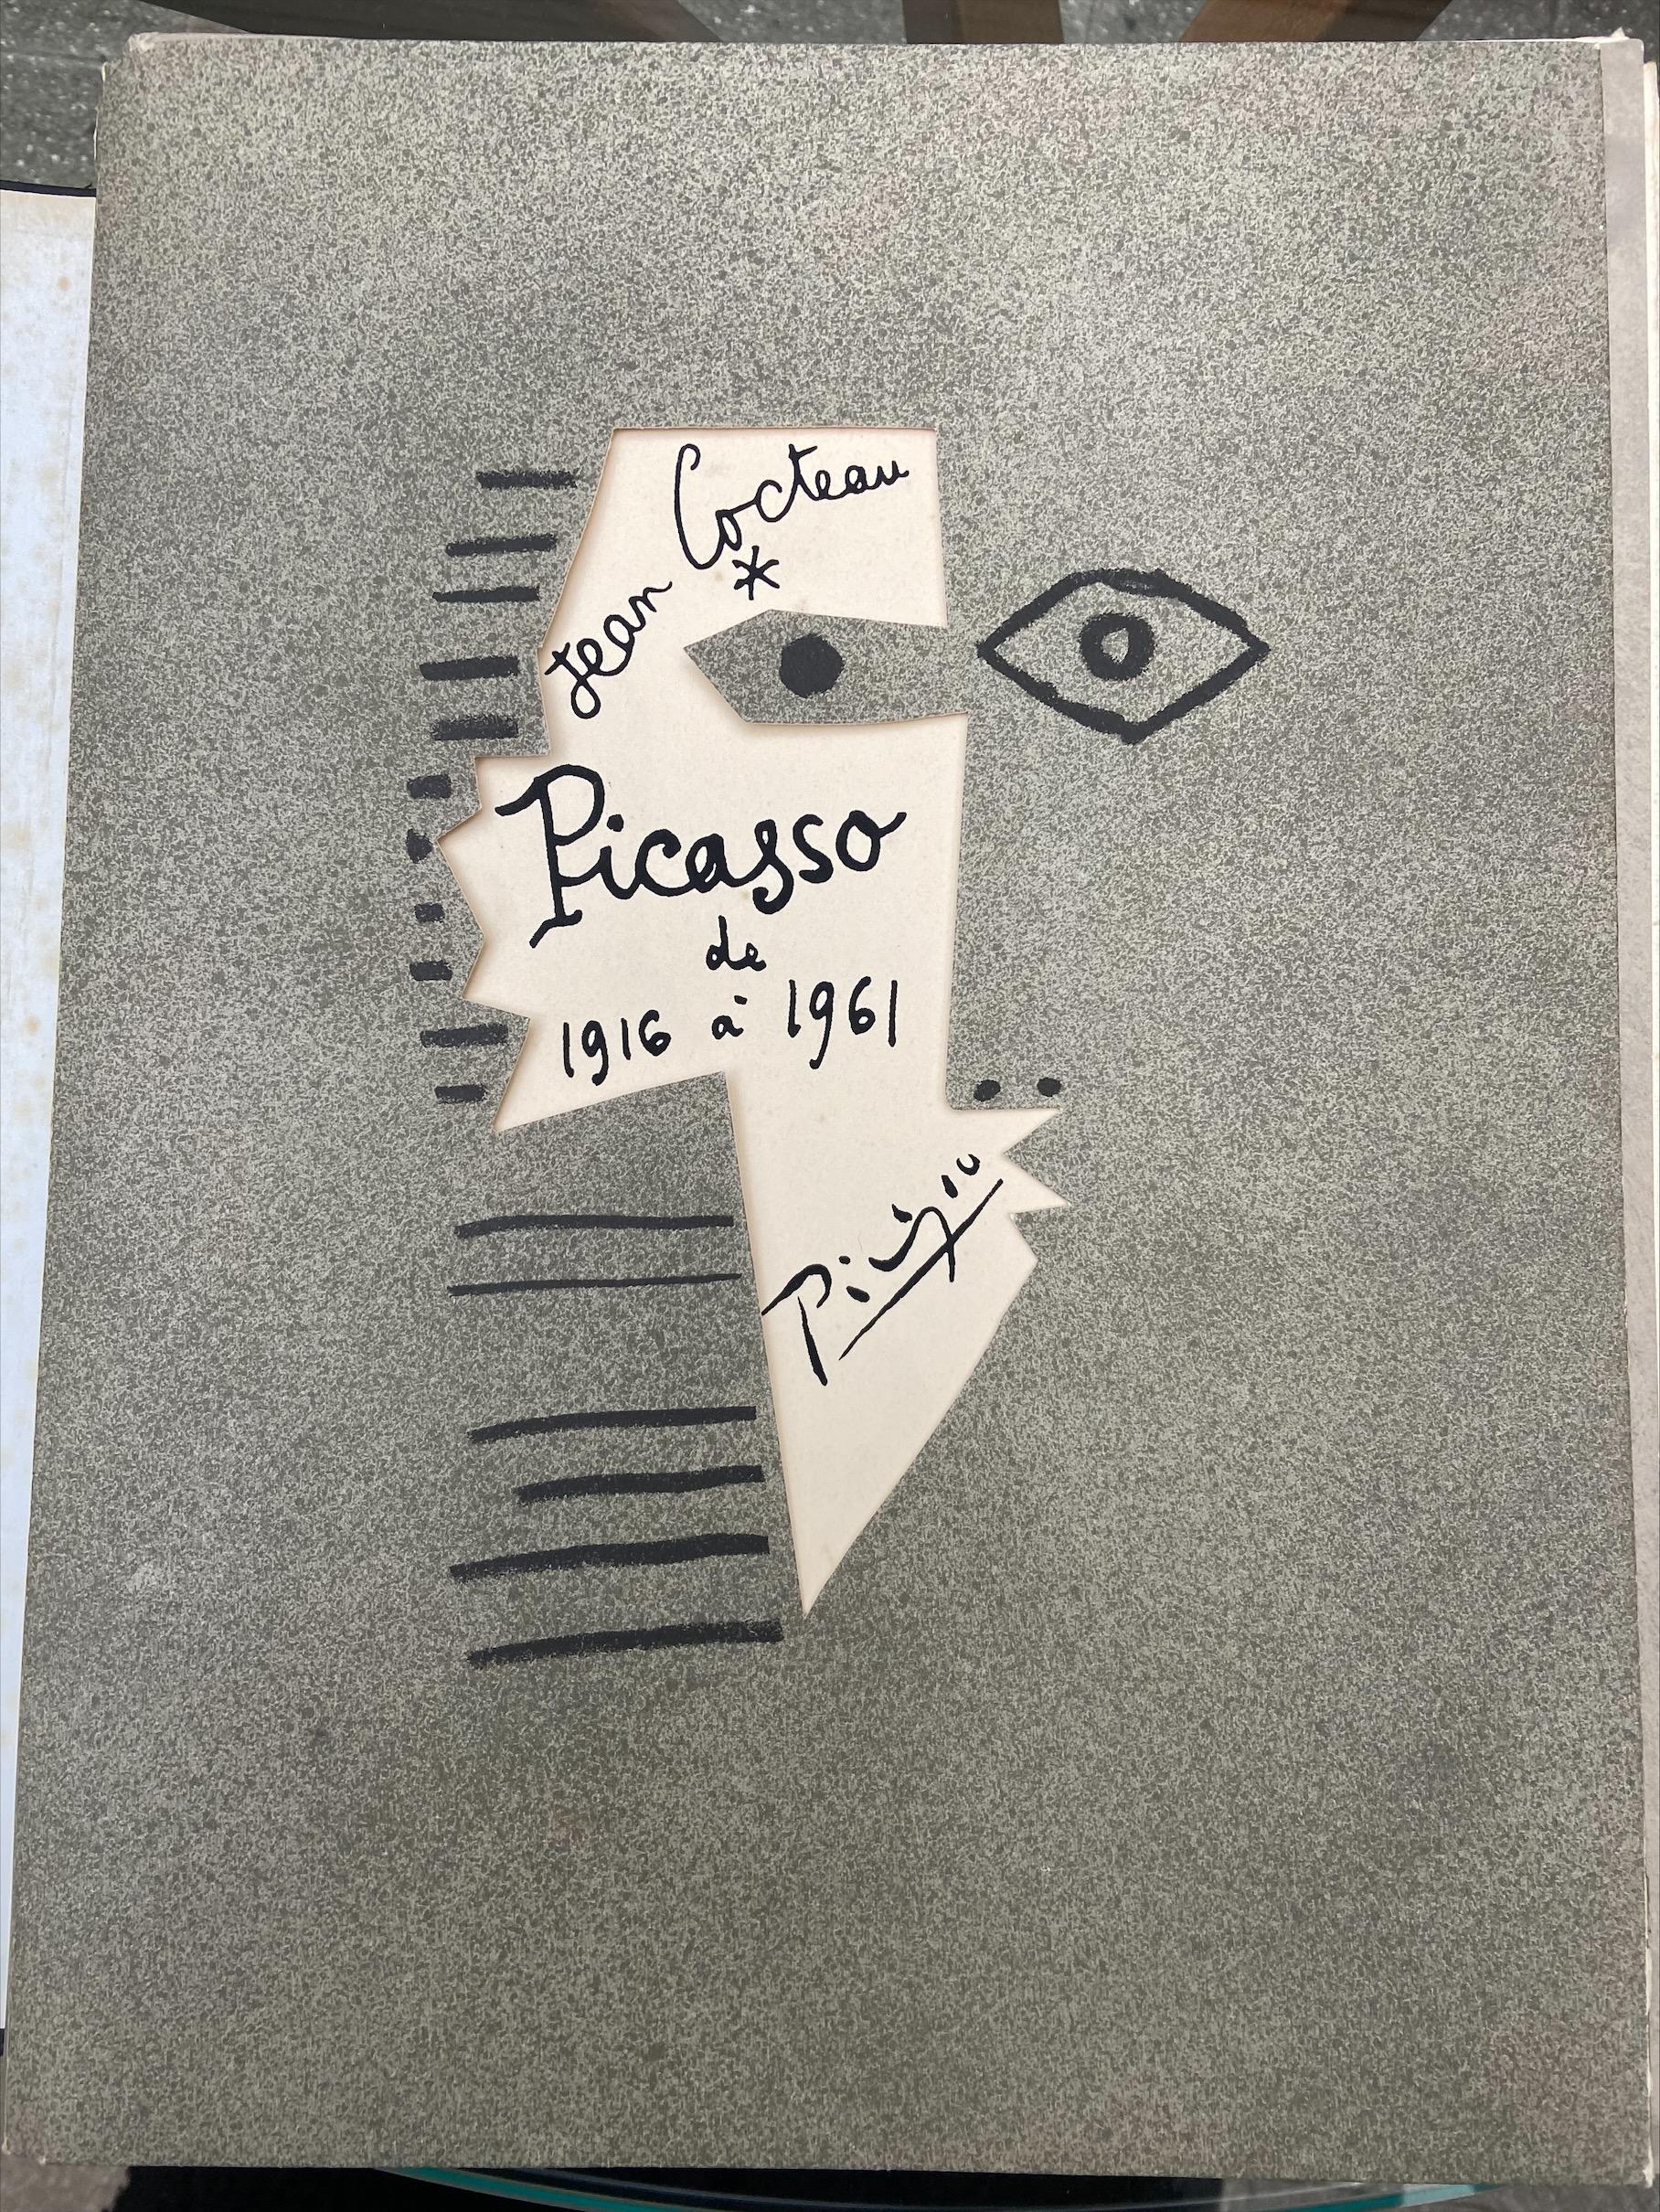 Mappe "Picasso von 1916 bis 1961" - Jean Cocteau und Pablo Picasso 
Edition du Rocher 
1962
Kopie an den Autor 
H39xB29cm
Signiert von Picasso und Jean Cocteau 
Originallithografien von Pablo Picasso, die seine Hauptwerke zwischen 1916 und 1961